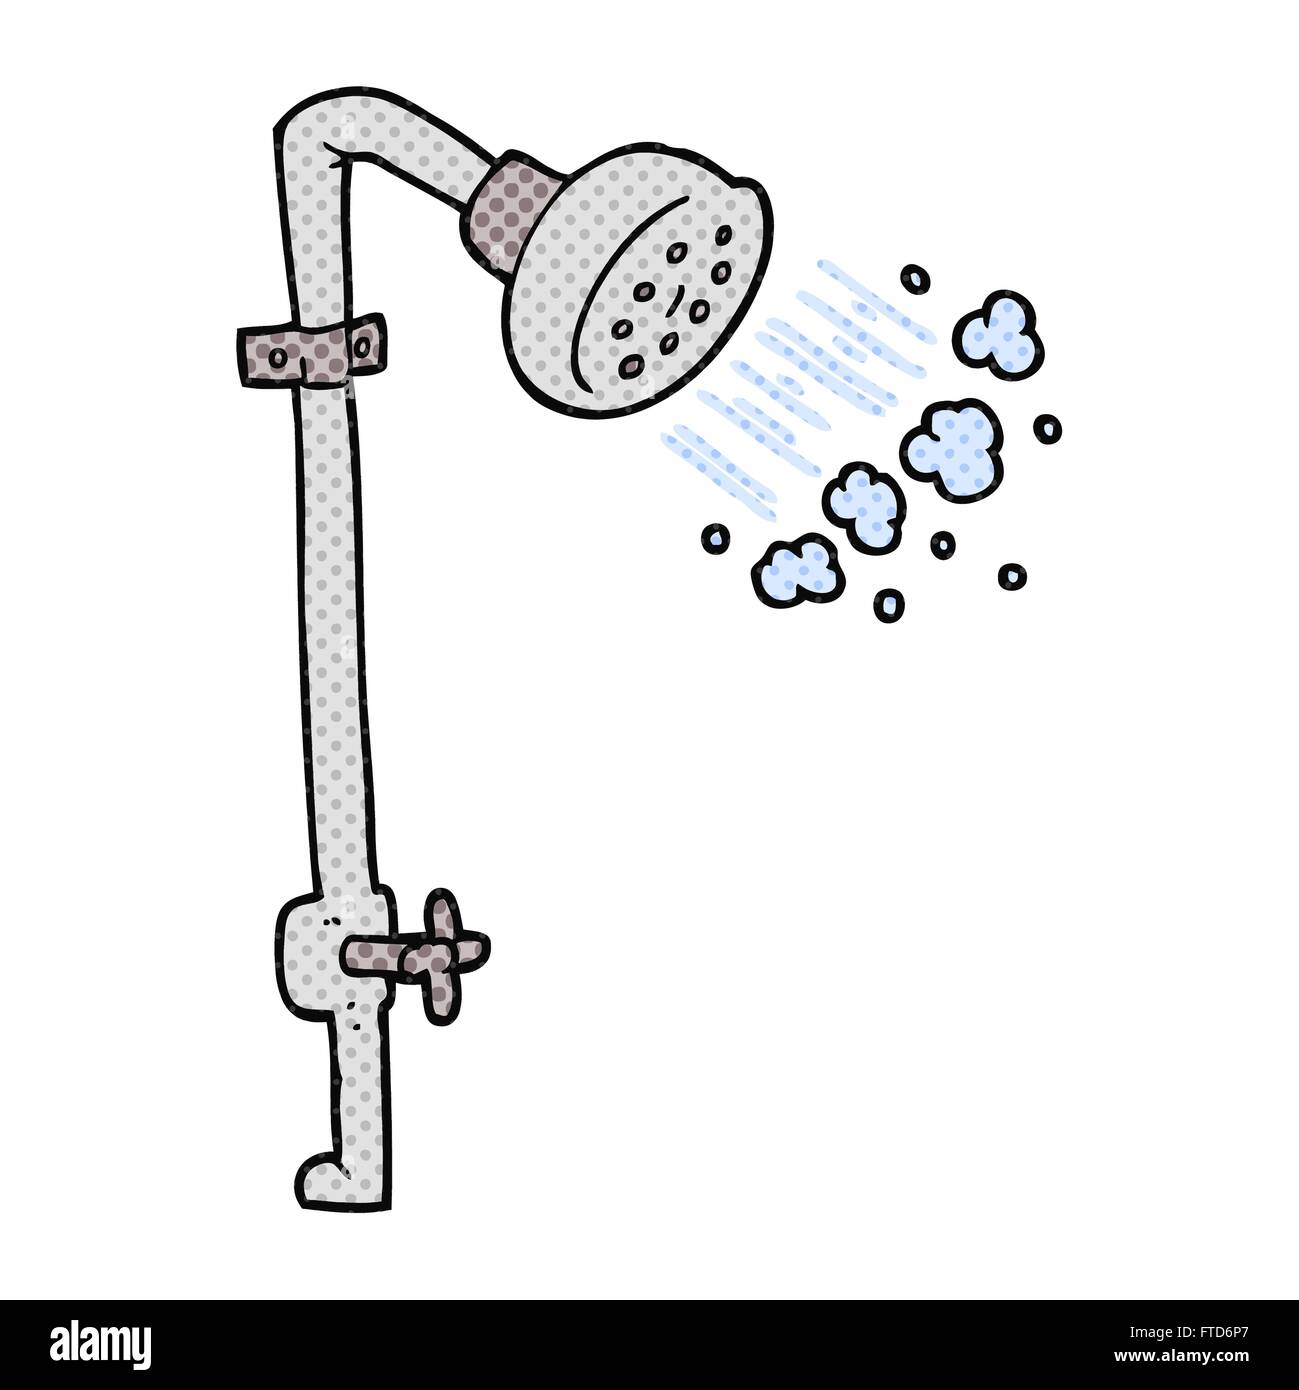 Рисунок душ с краном в раздевалке